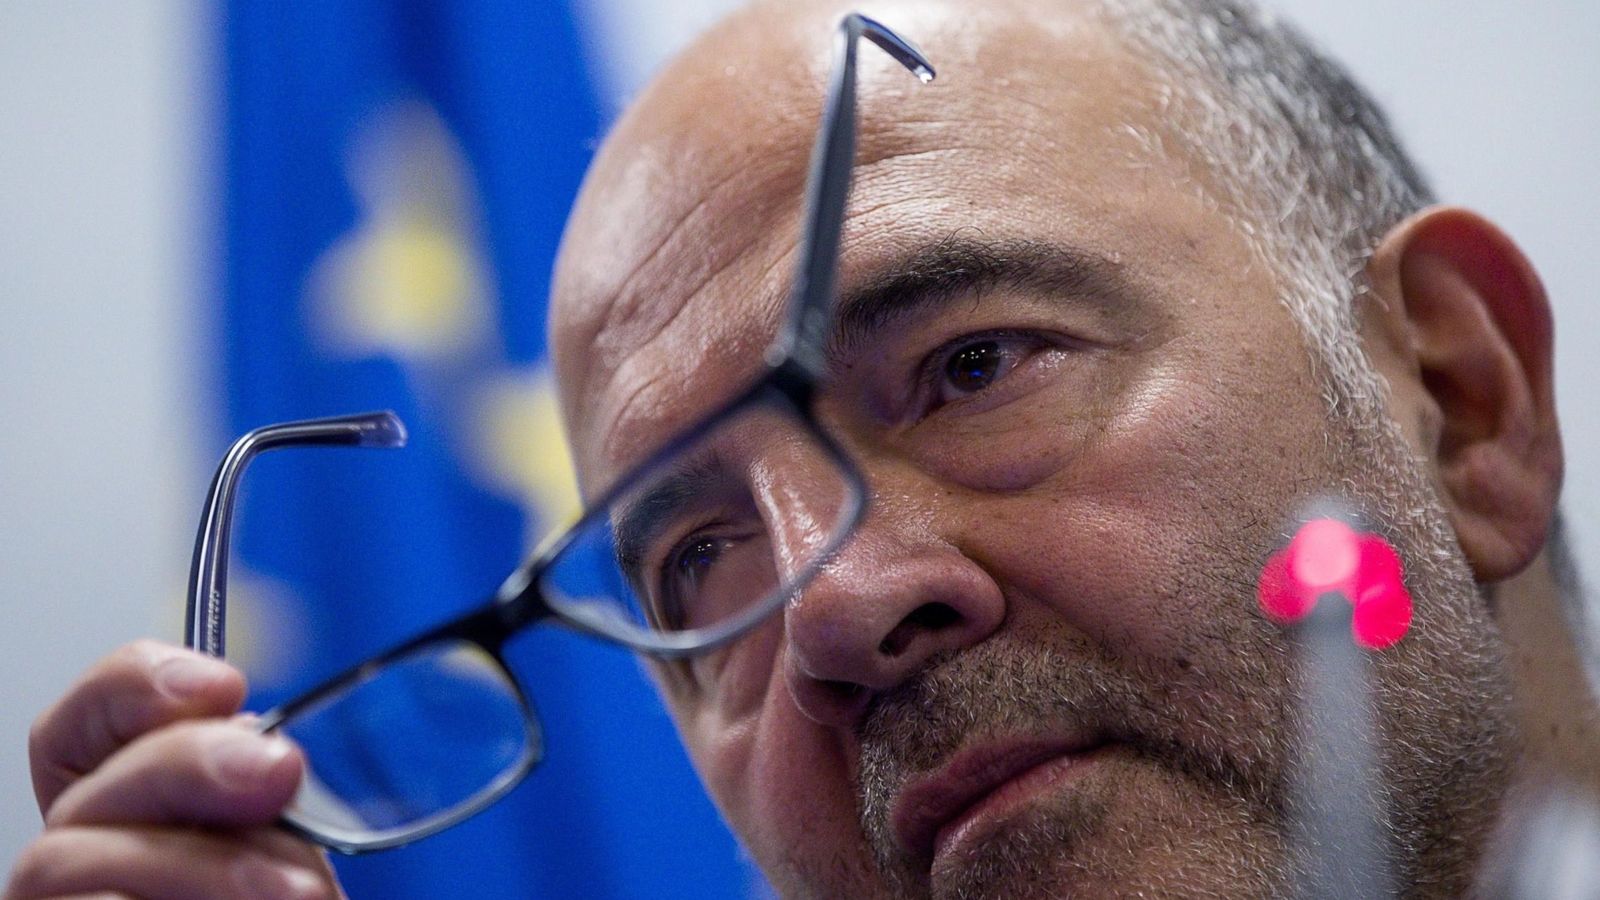 Foto: Moscovici, comisario europeo de Asuntos Económicos (EFE)